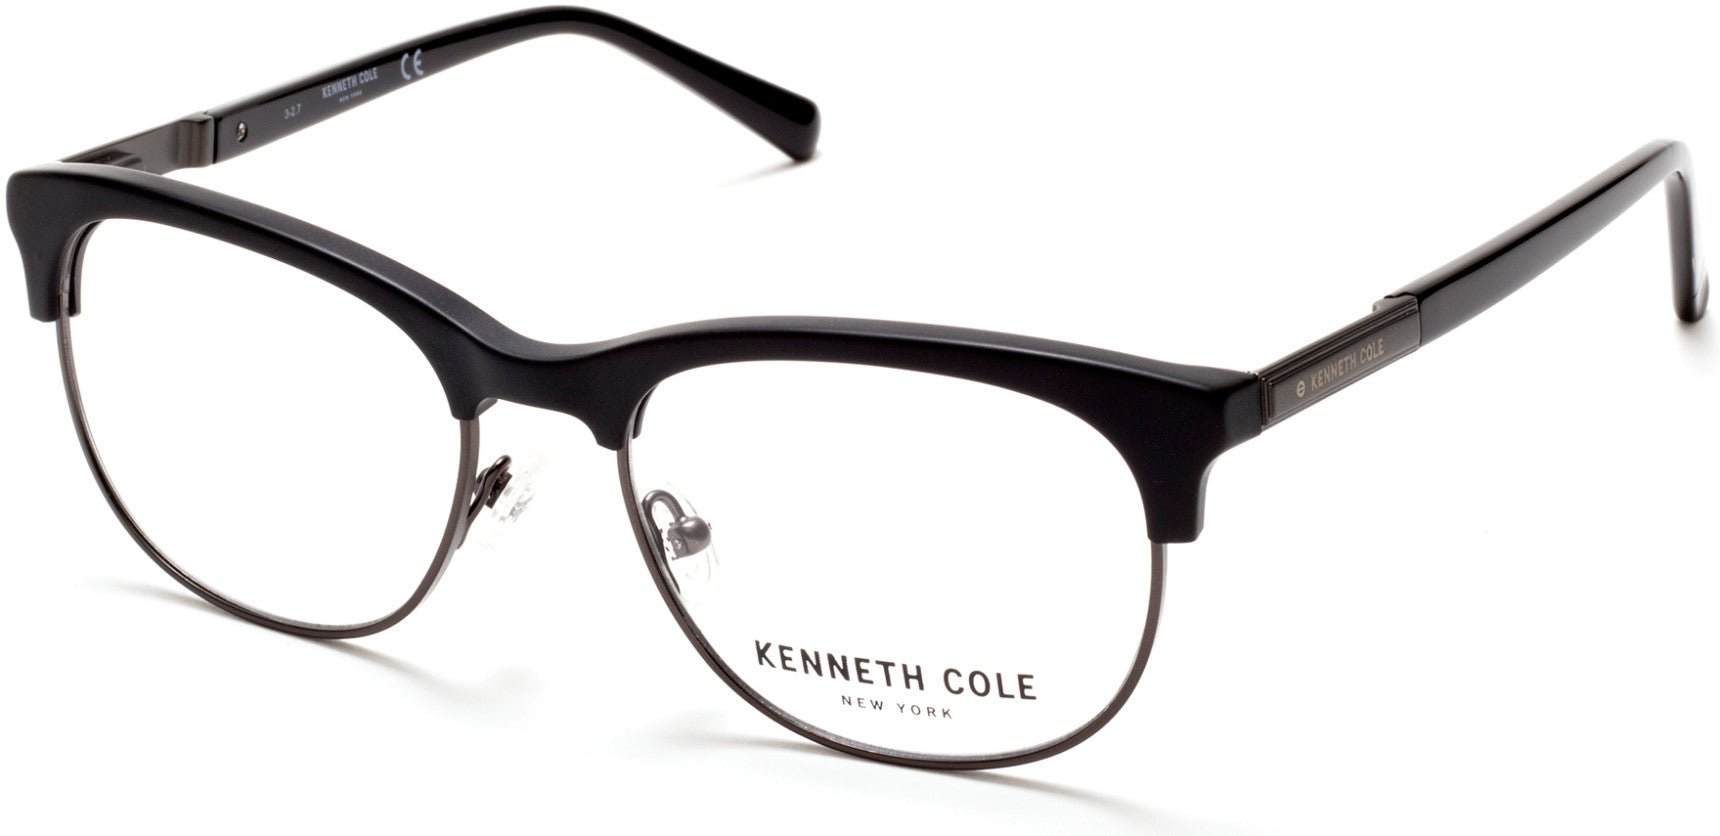 Kenneth Cole New York,Kenneth Cole Reaction KC0266 Eyeglasses 002-002 - Matte Black